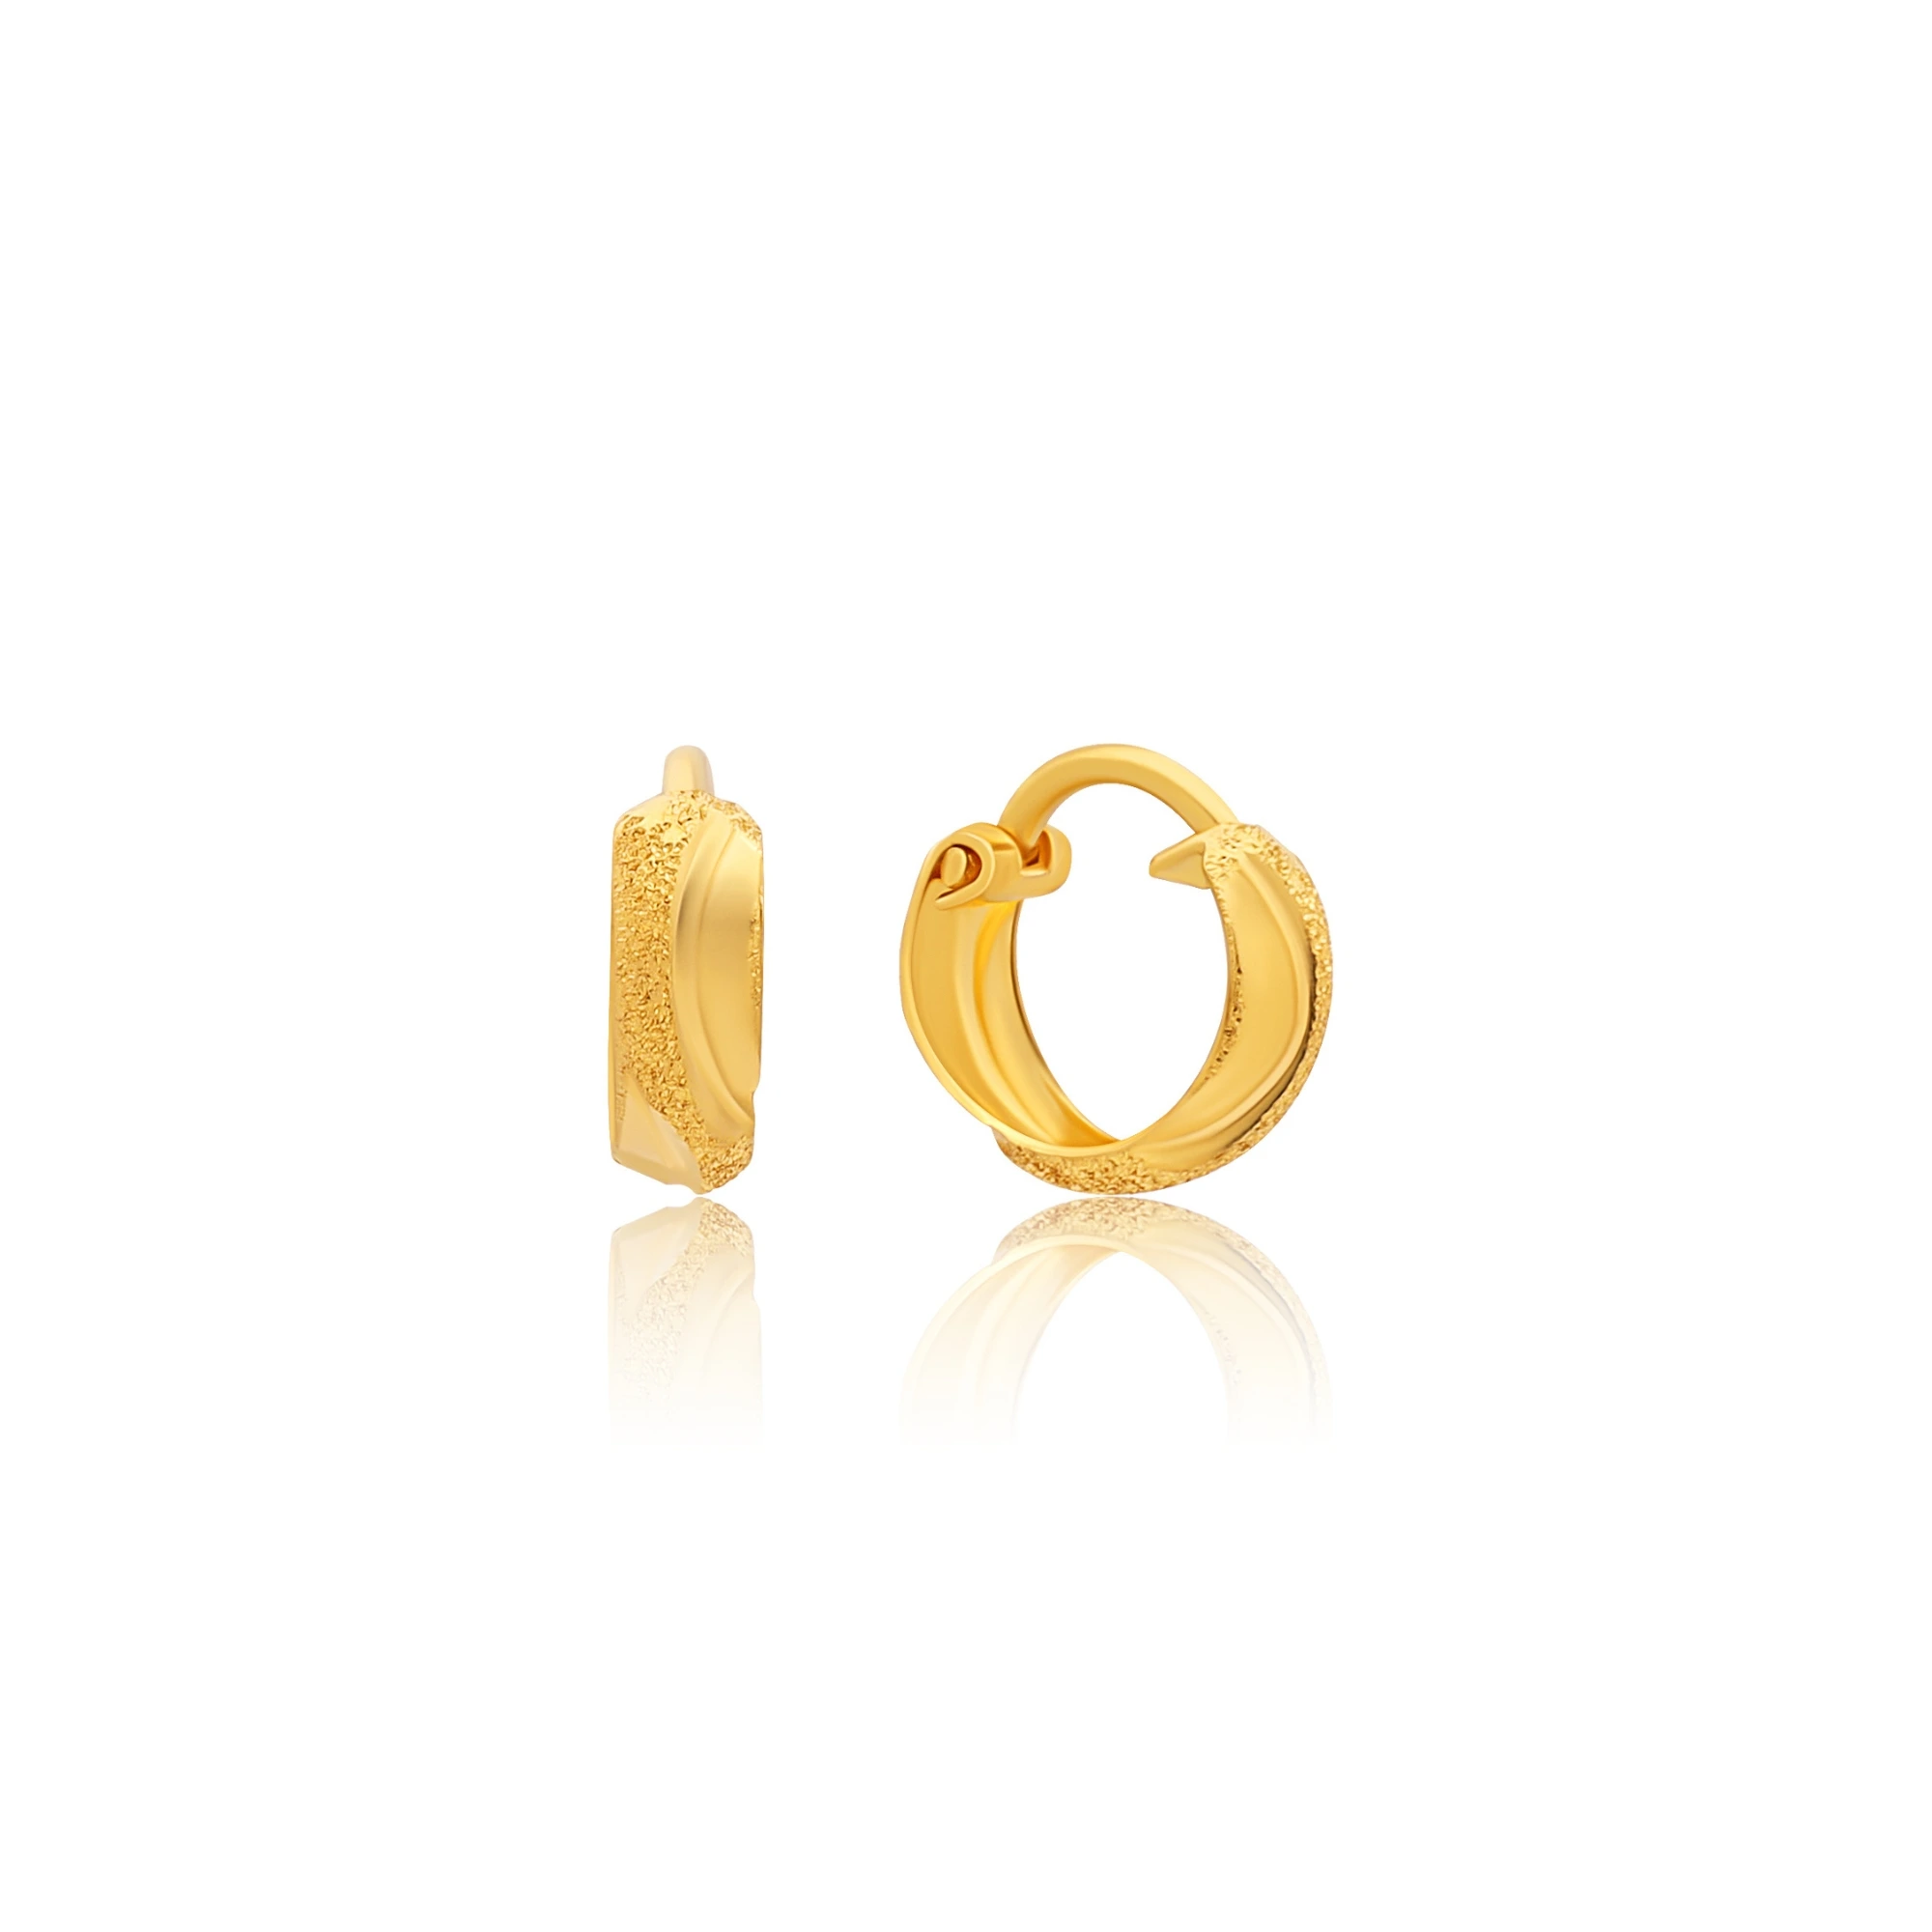 22K Gold Hoop Earrings (Ear Bali) For Baby - 235-GER16310 in 0.900 Grams